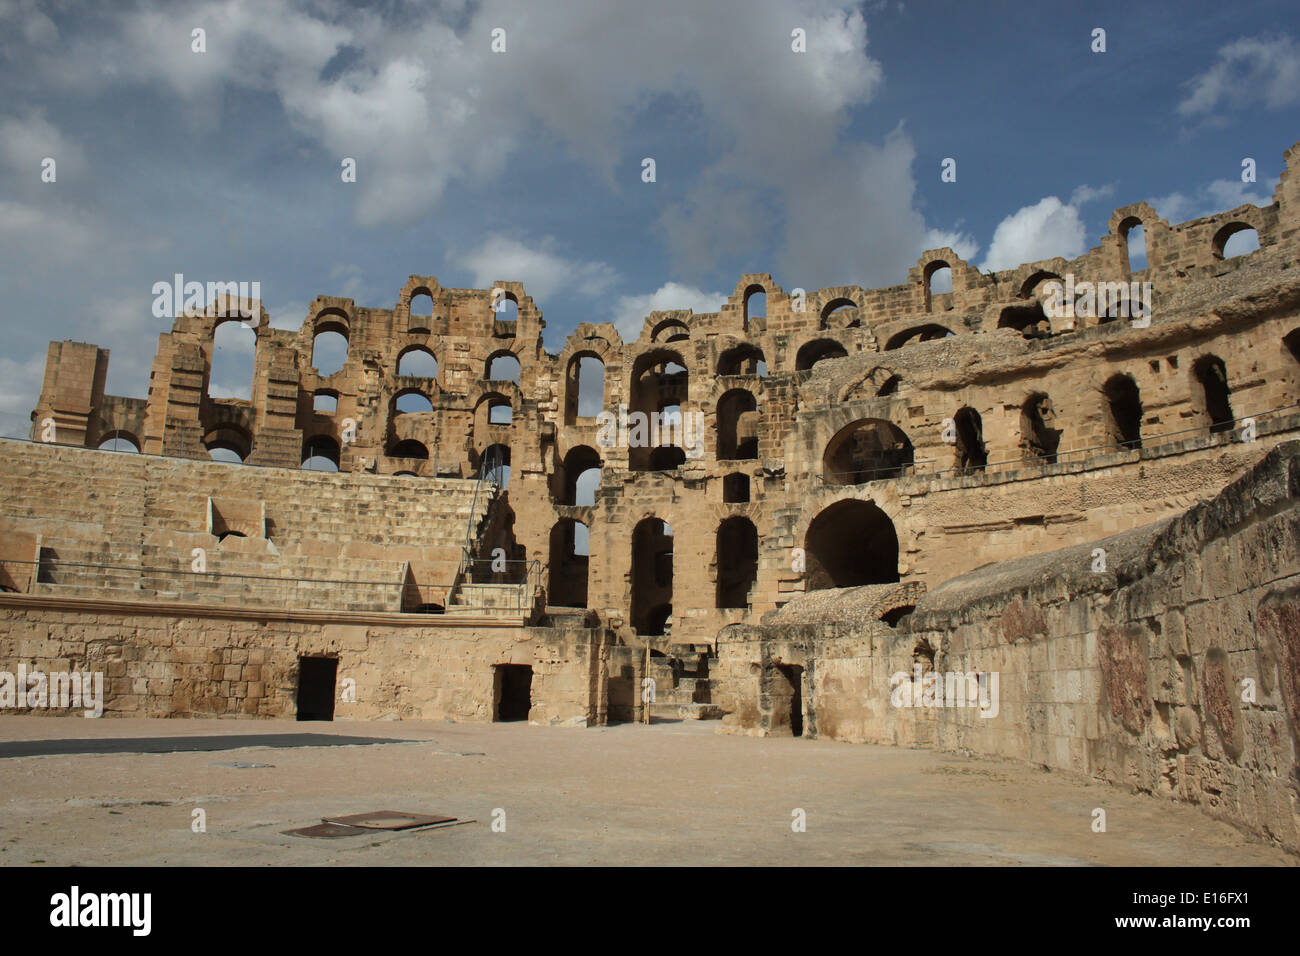 Innenansicht des römischen Amphitheaters in El Djem in Tunesien. Erbaut ca. 238AD, ist es fast so groß wie das Kolosseum in Rom. Stockfoto